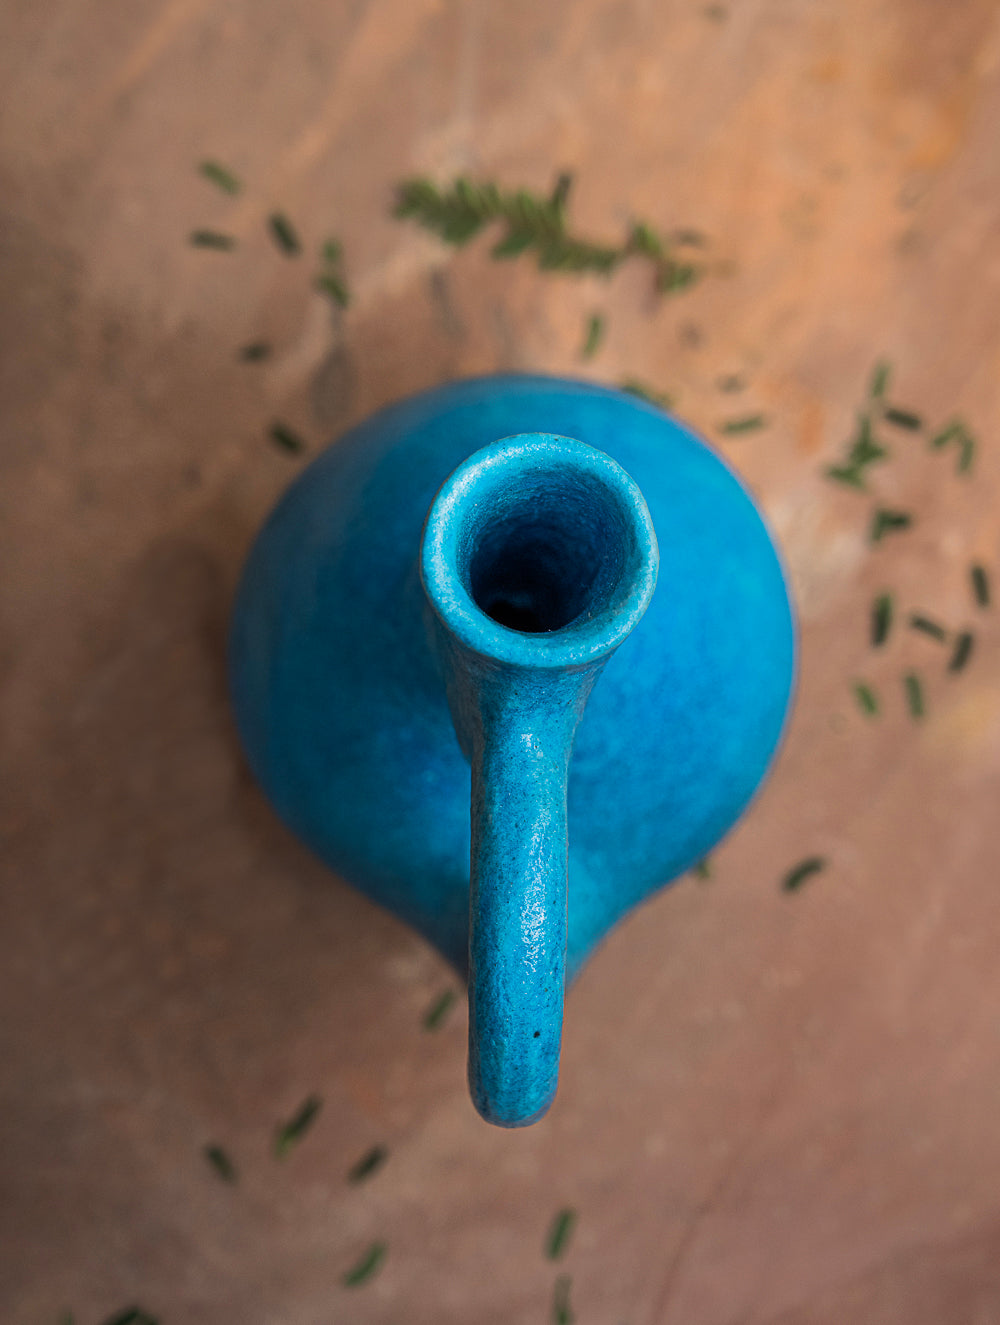 Load image into Gallery viewer, Delhi Blue Art Pottery Curio / Jug Vase